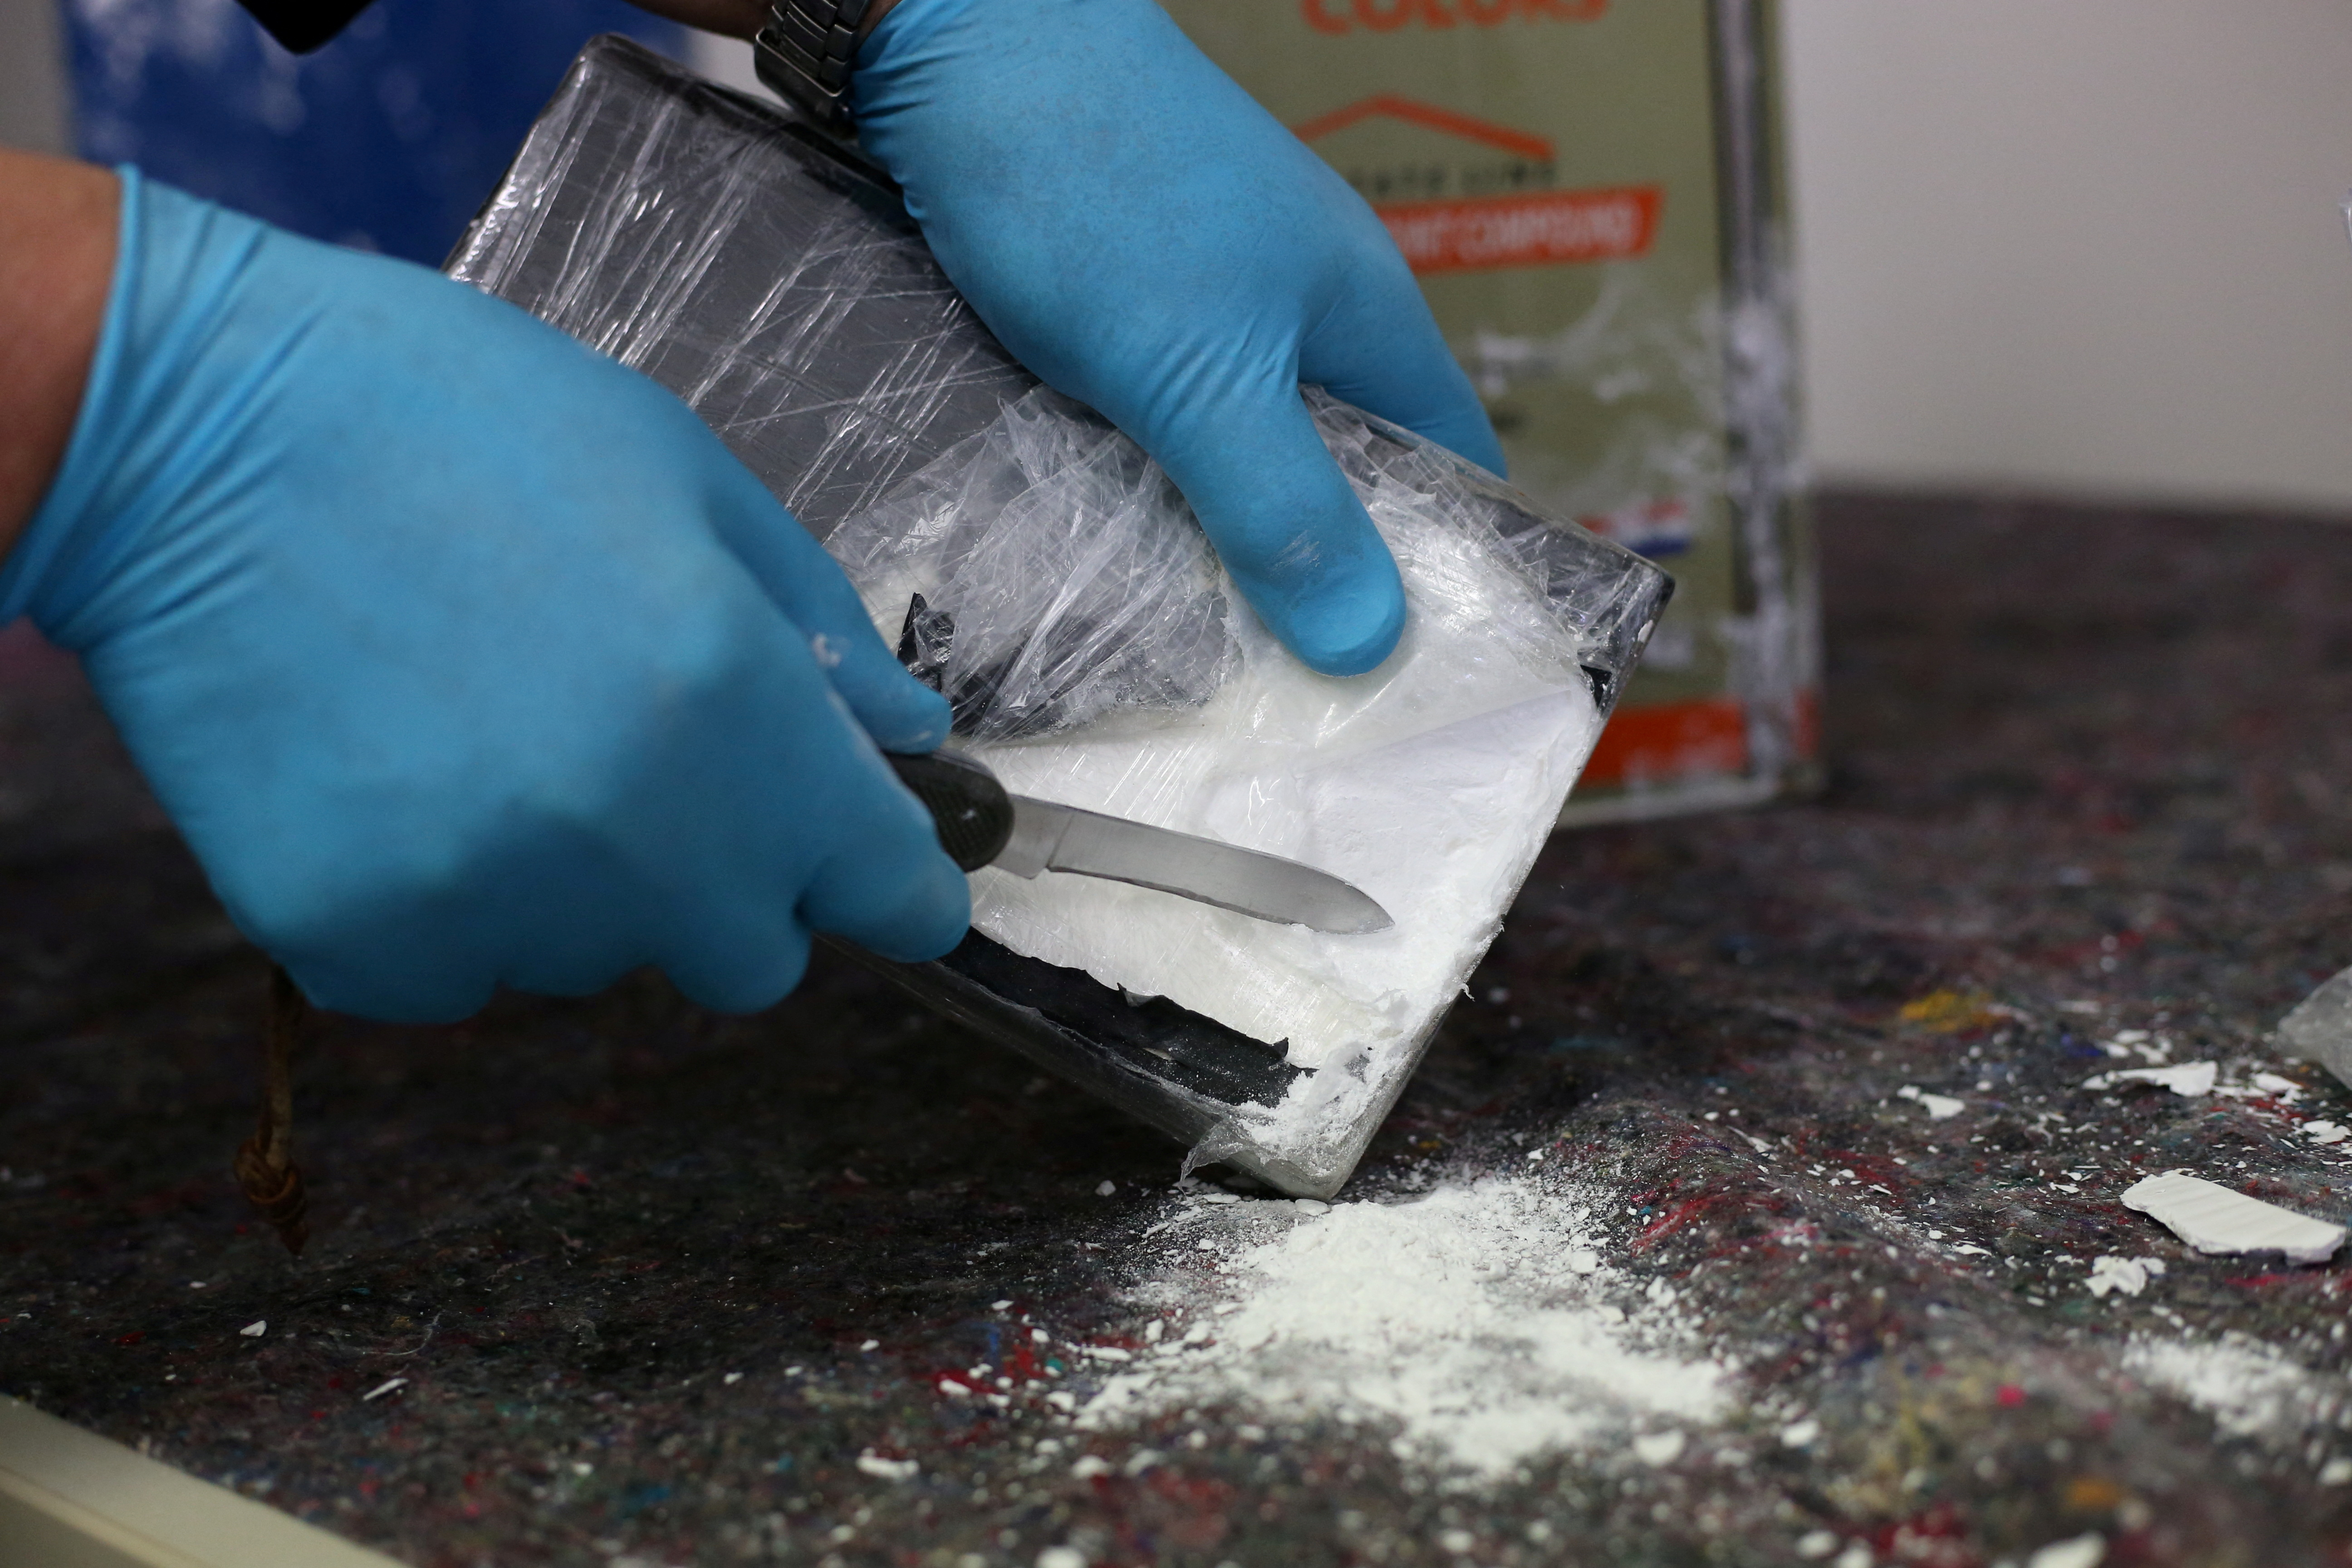  Las autoridades colombianas informaron que incautaron más de 1 tonelada de cocaína en Ipiales, Nariño, que sería propiedad de una de las disidencias de las extintas Farc. (Imagen de contexto, no corresponde a los hechos).